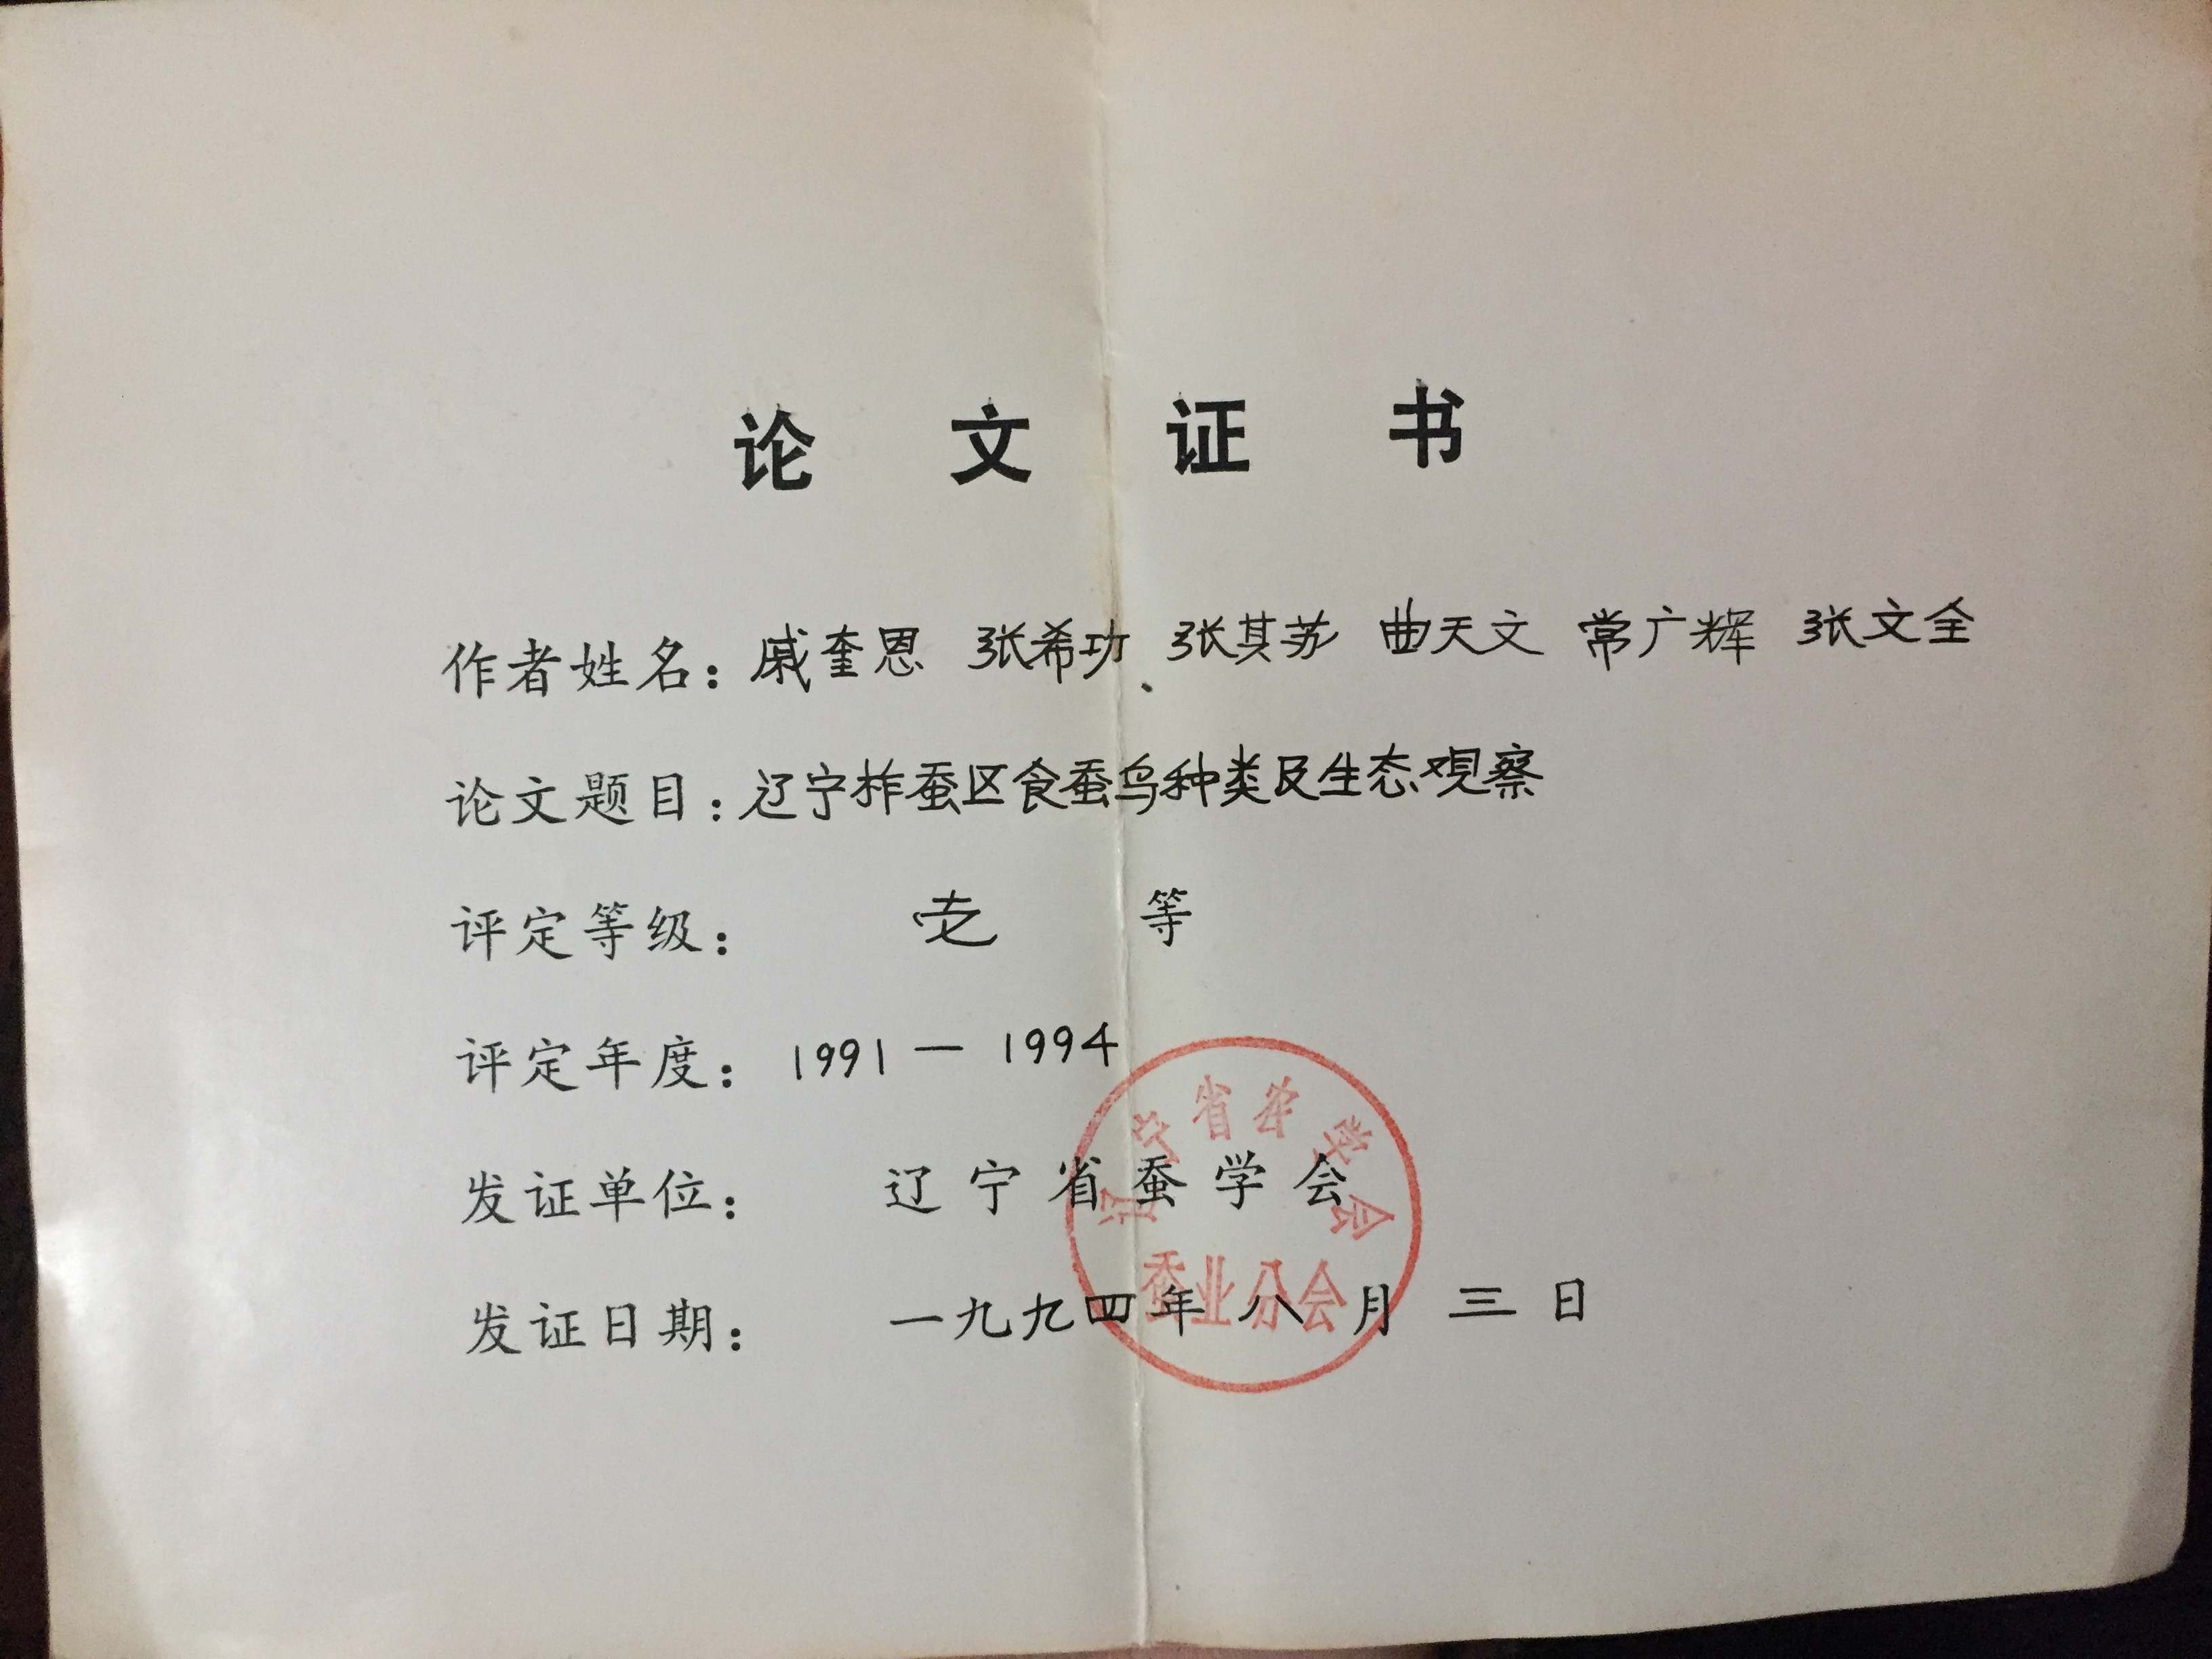 蠶區食蠶鳥類論文證書——遼寧省蠶學會1994年頒發